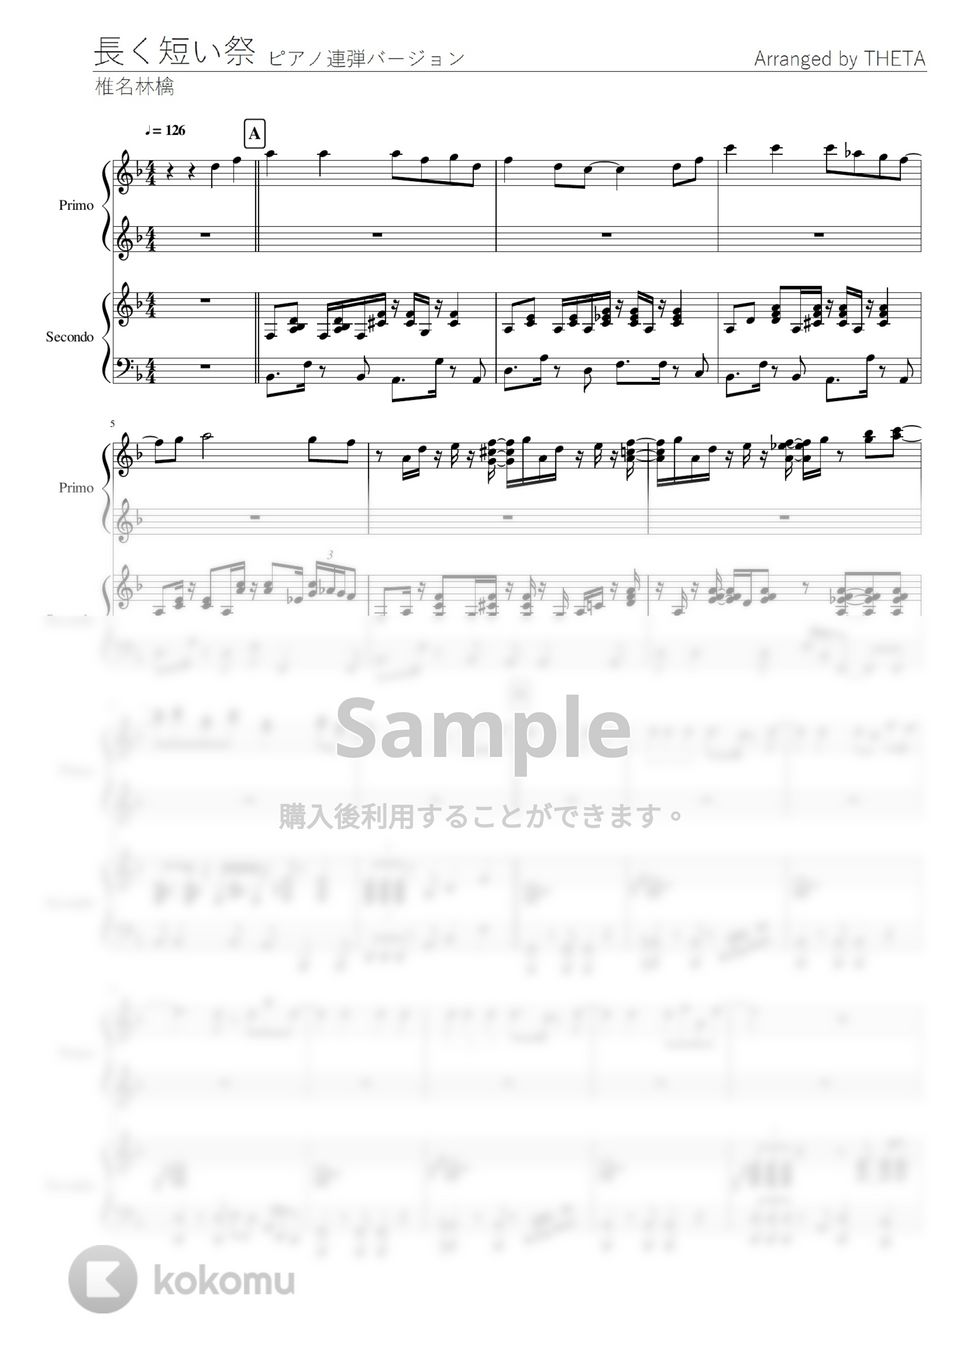 椎名林檎 - 長く短い祭 (連弾) by THETA